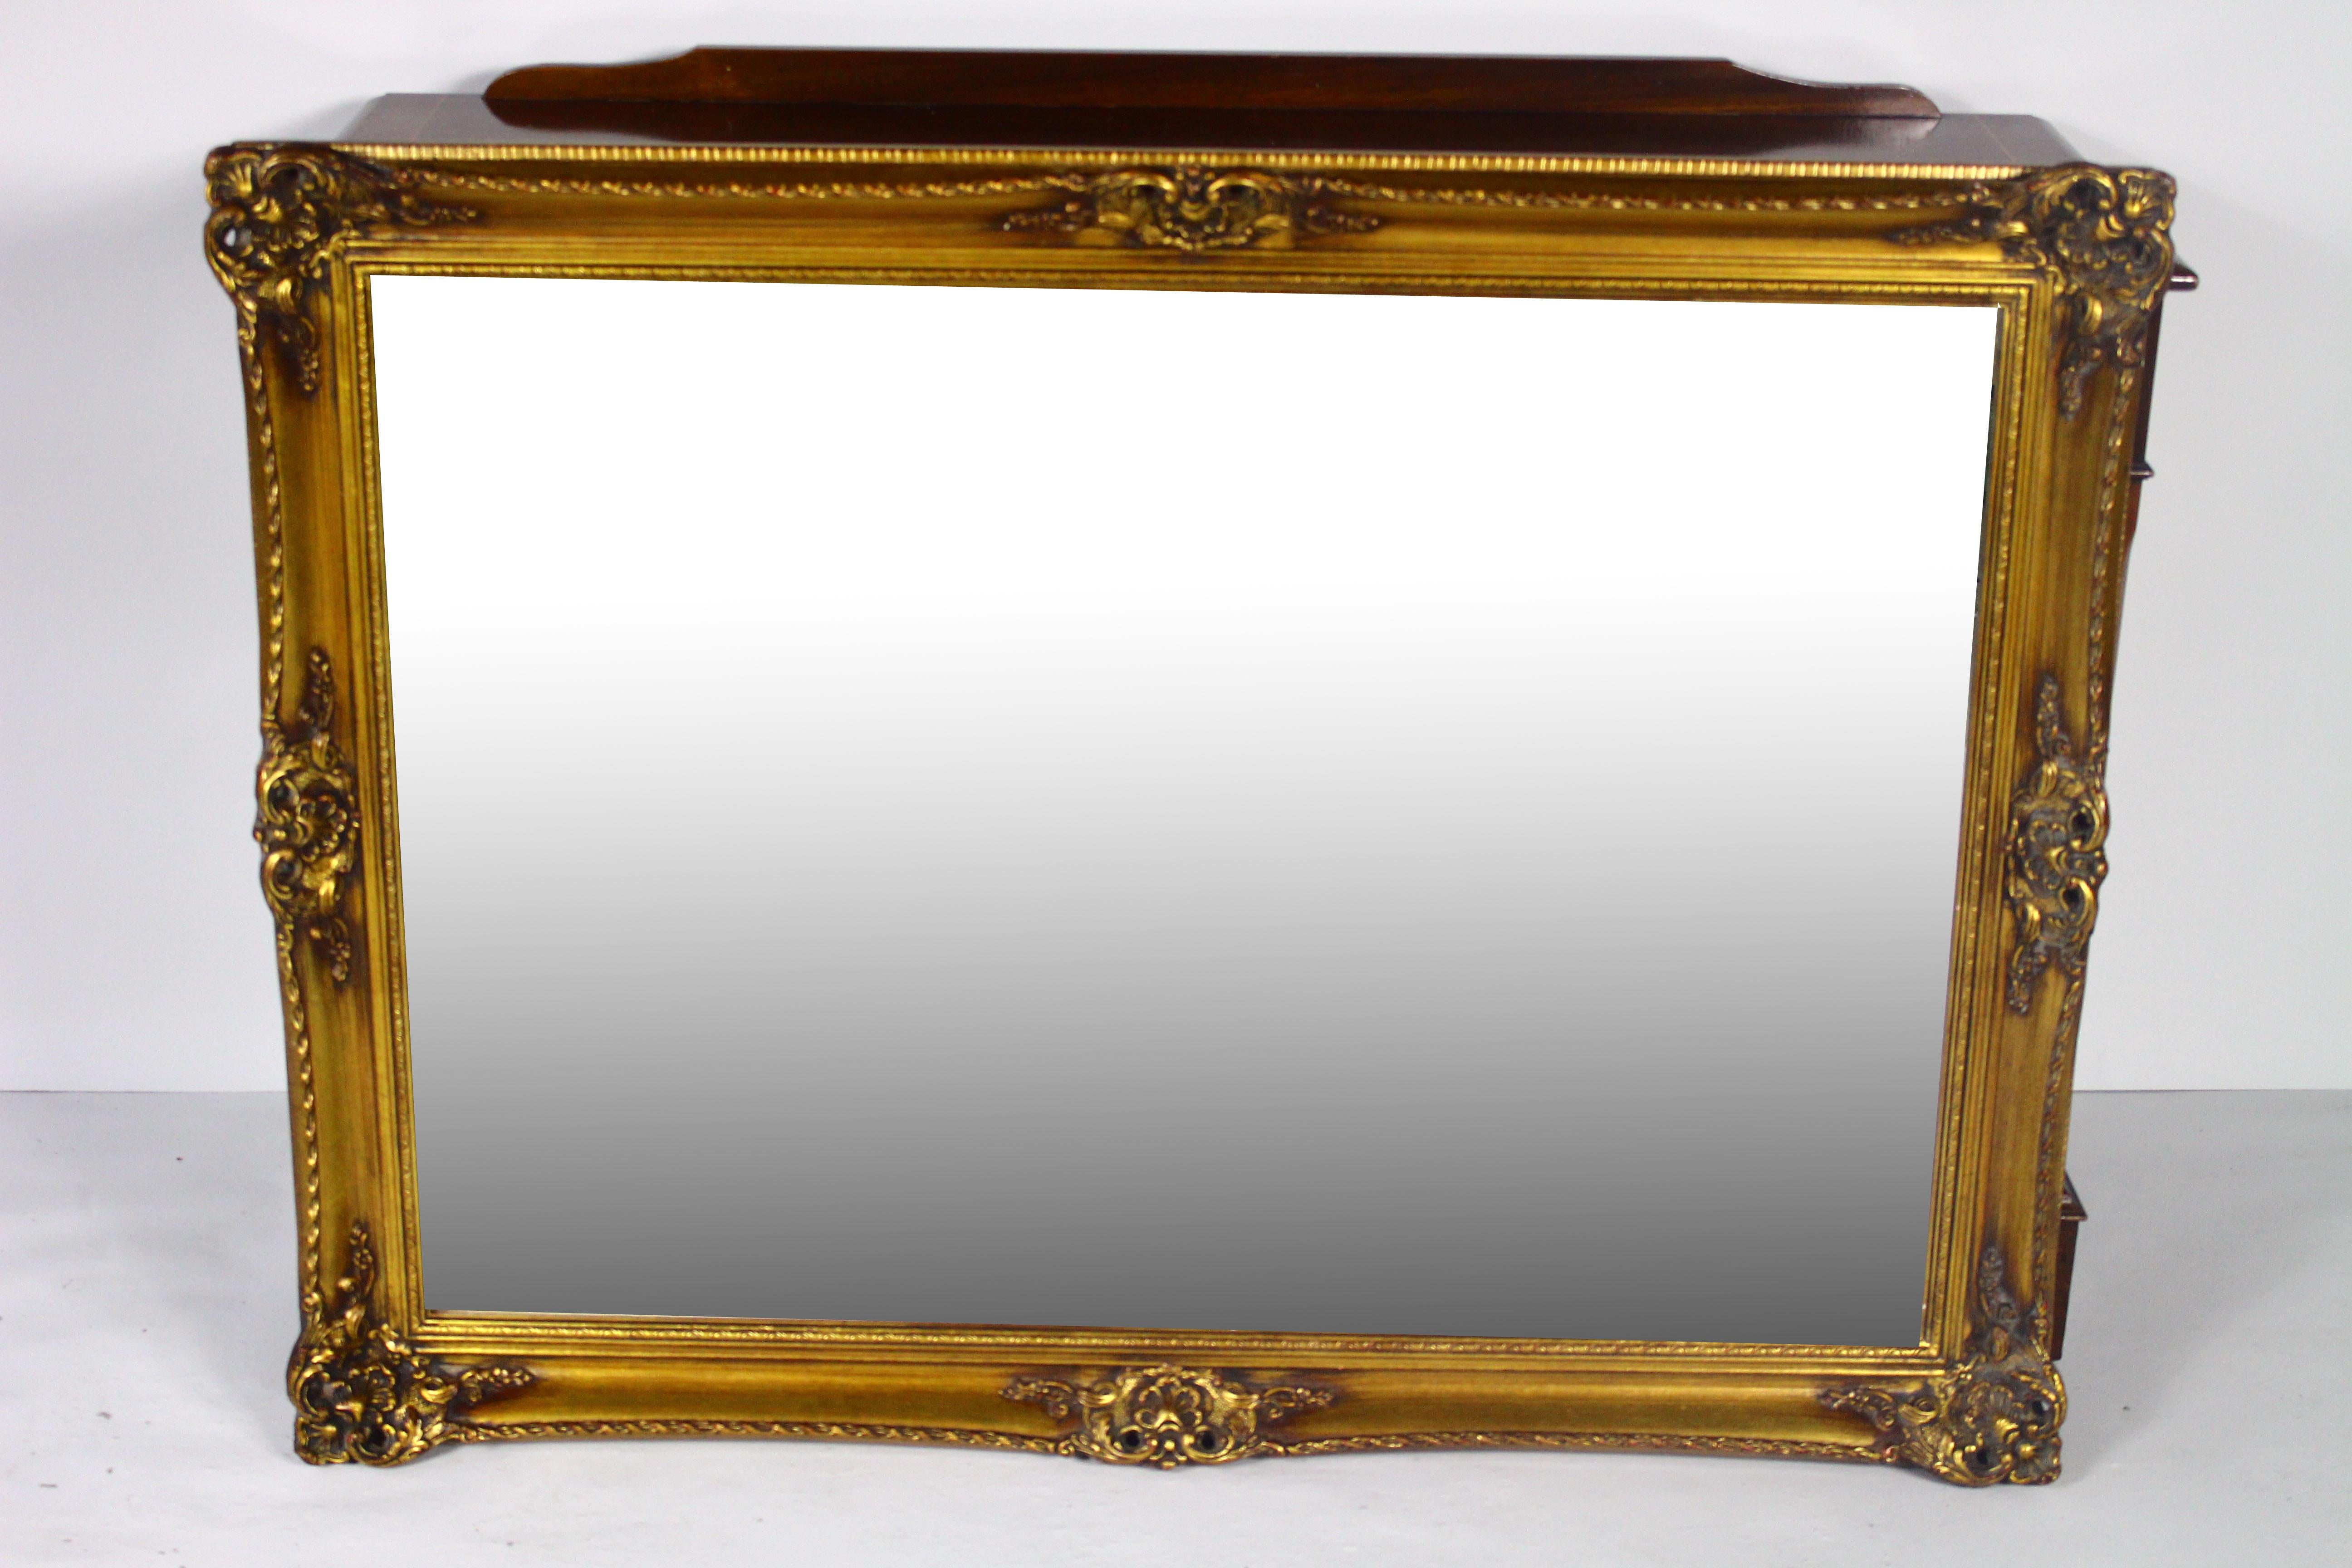 Superbe miroir ancien avec cadre doré.
Miroir avec cadre sculpté.
Bon état, prêt à l'emploi.